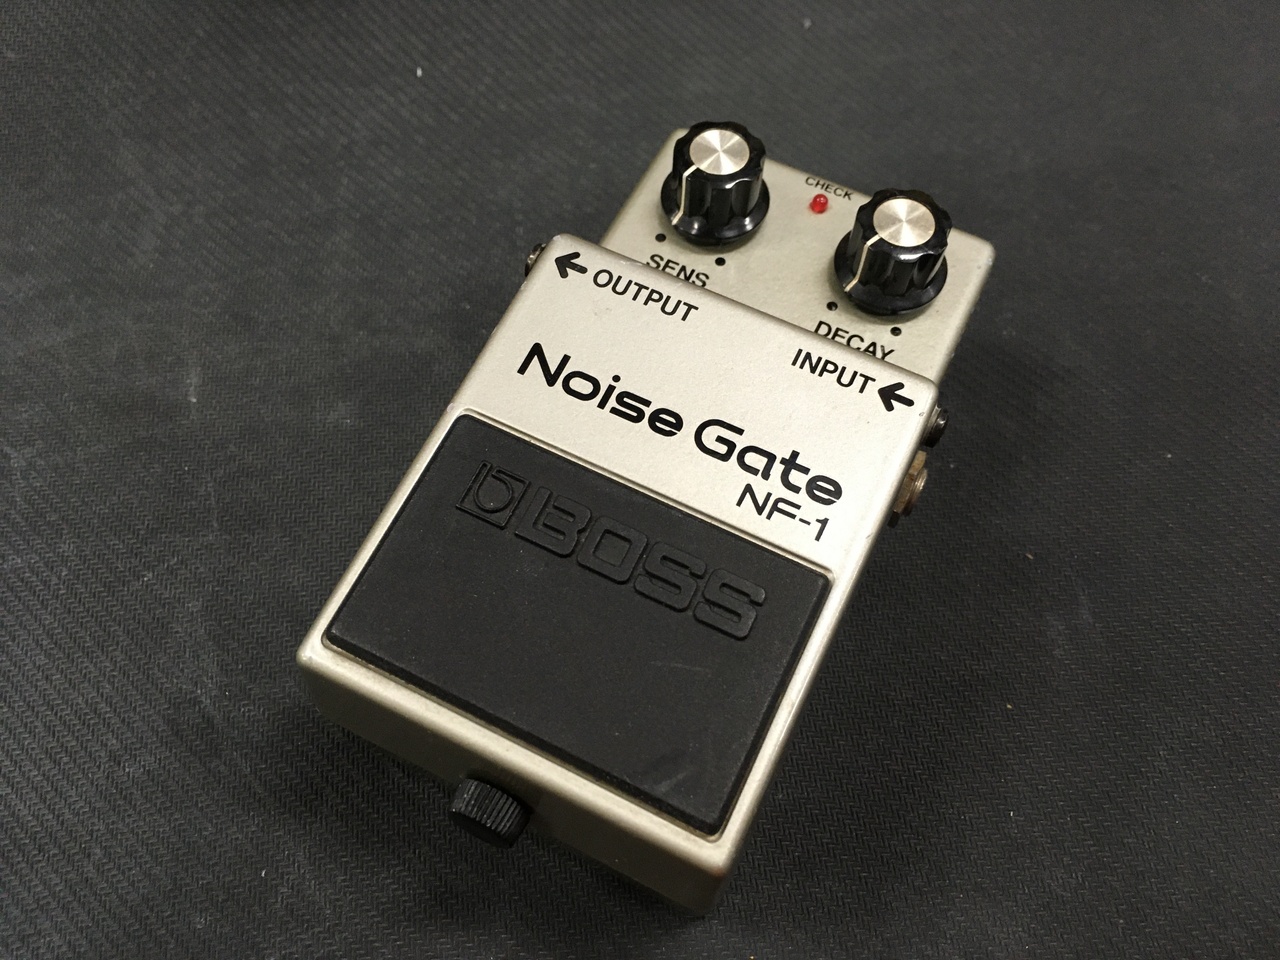 BOSS Noise Gate NF-1日本製